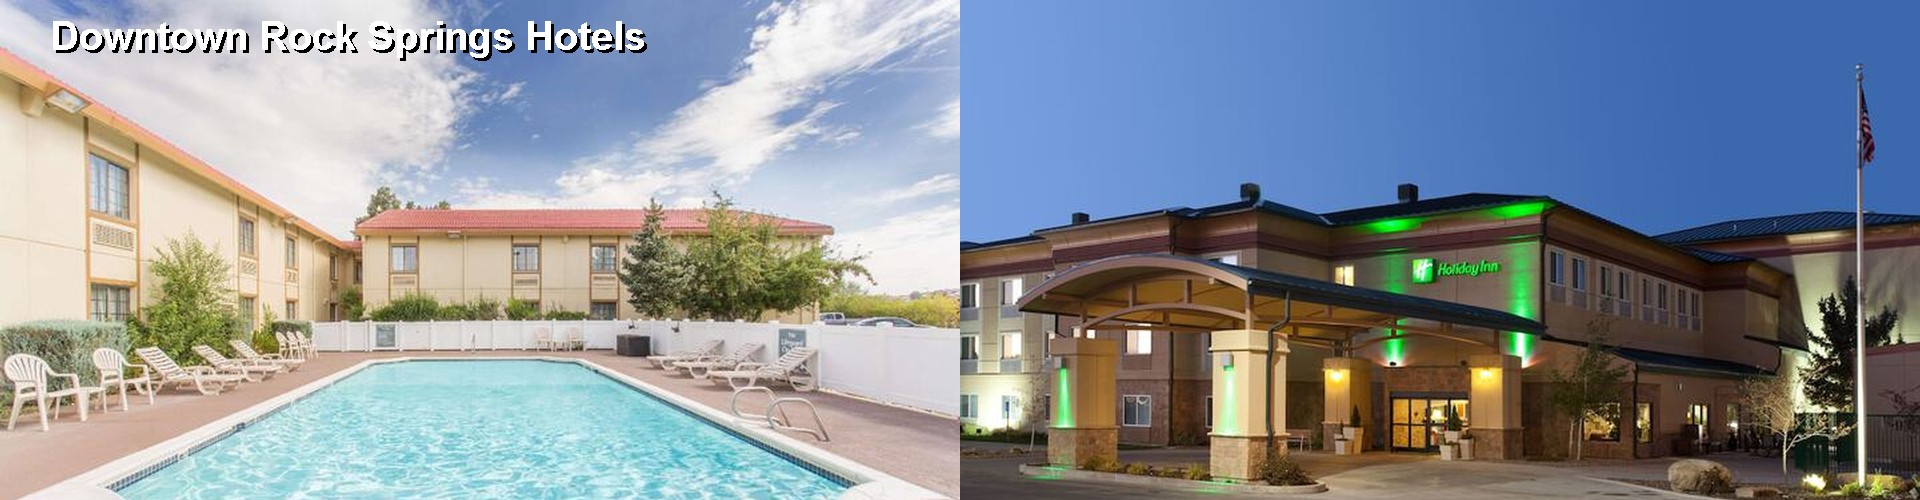 5 Best Hotels near Downtown Rock Springs